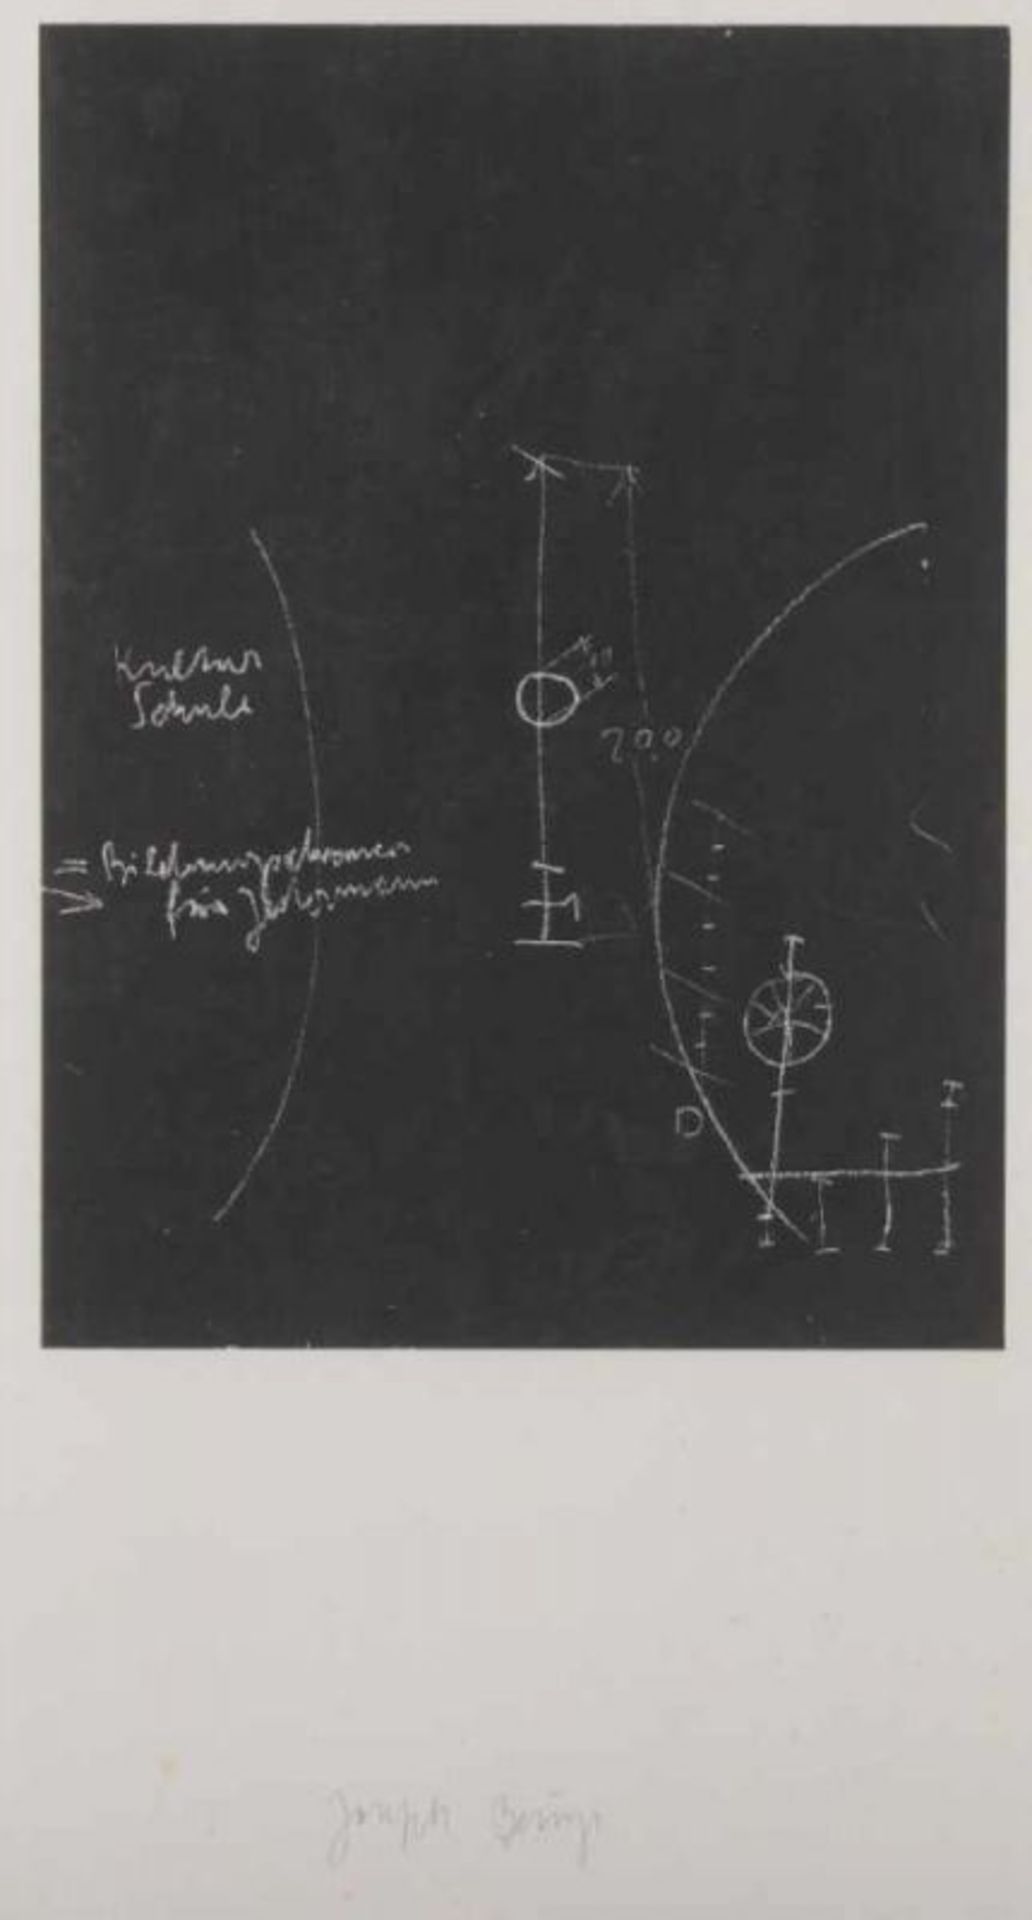 BEUYS, Joseph, "Tafel I-III", Serigrafien, 37 x 27, eine Arbeit handsigniert, WV Schellmann 326-328.